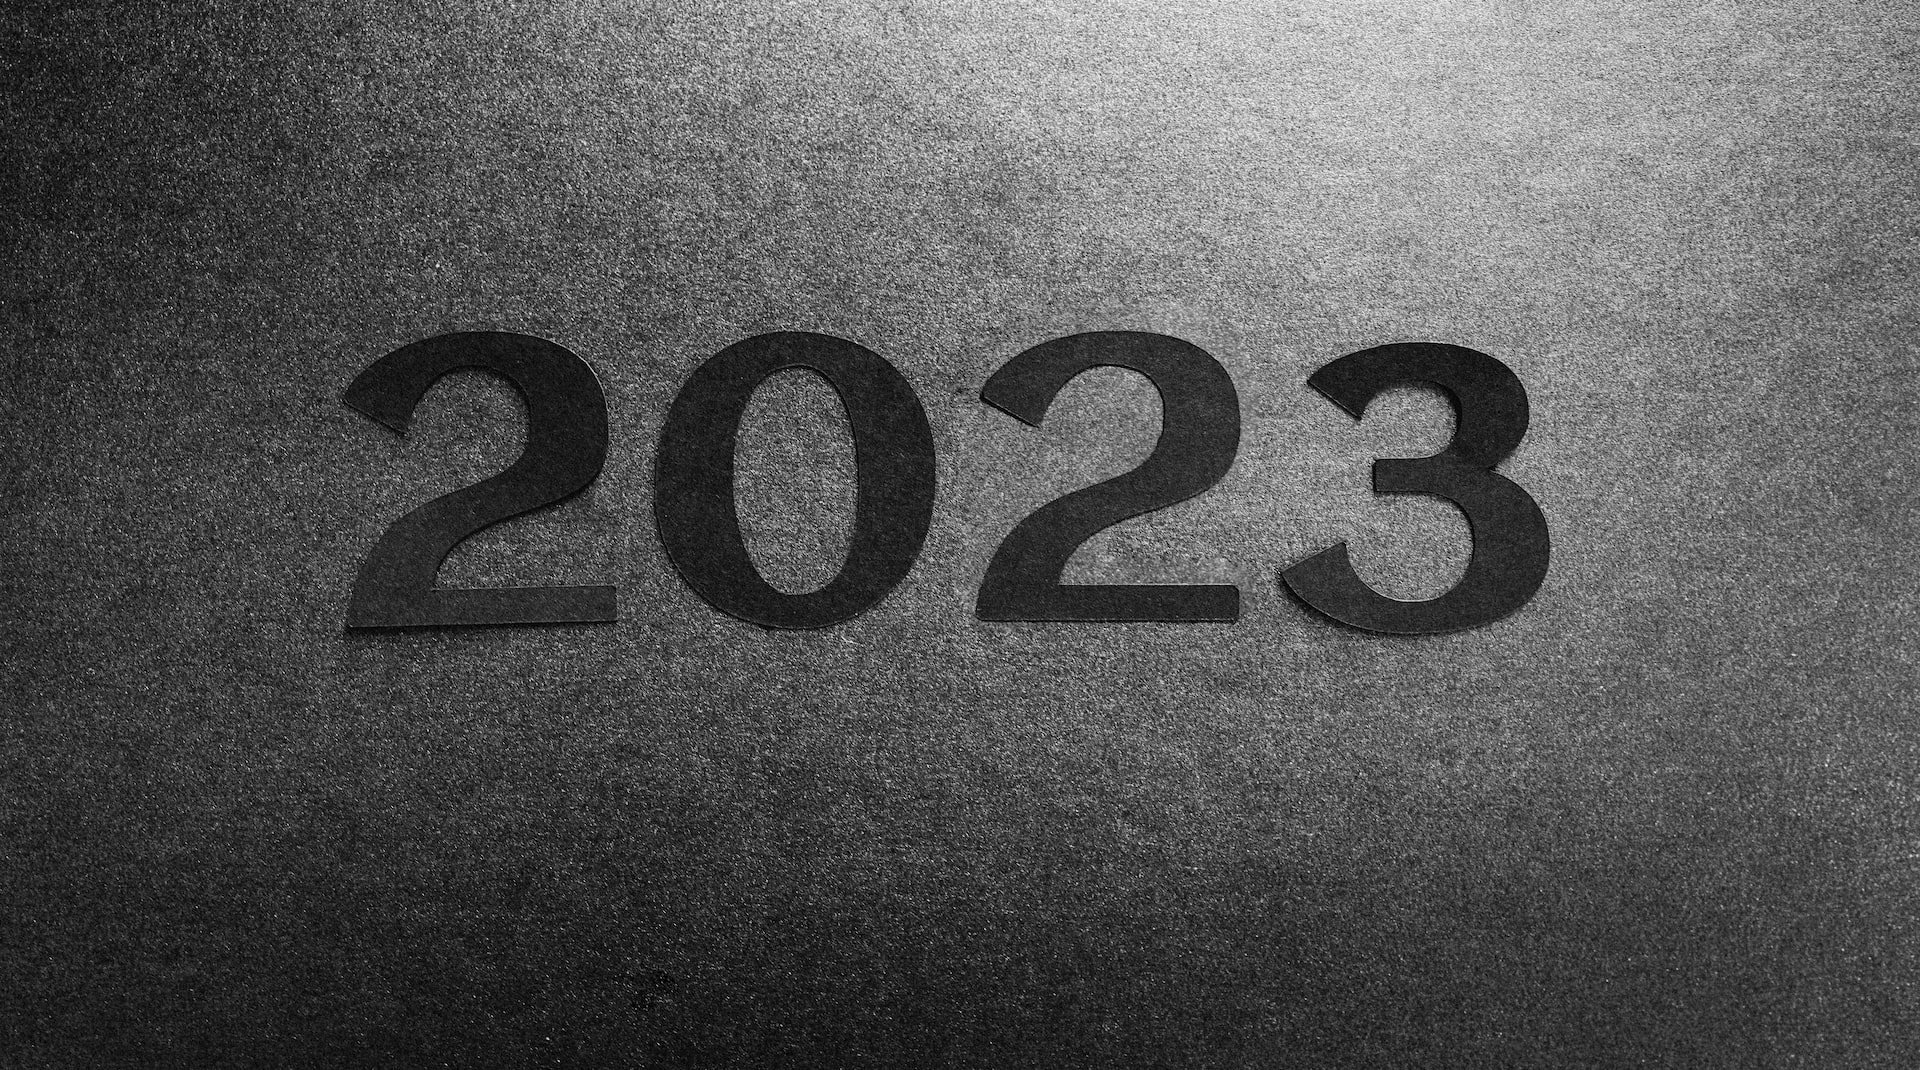 Imagem para o artigo sobre tendências para o mundo do trabalho em 2023.